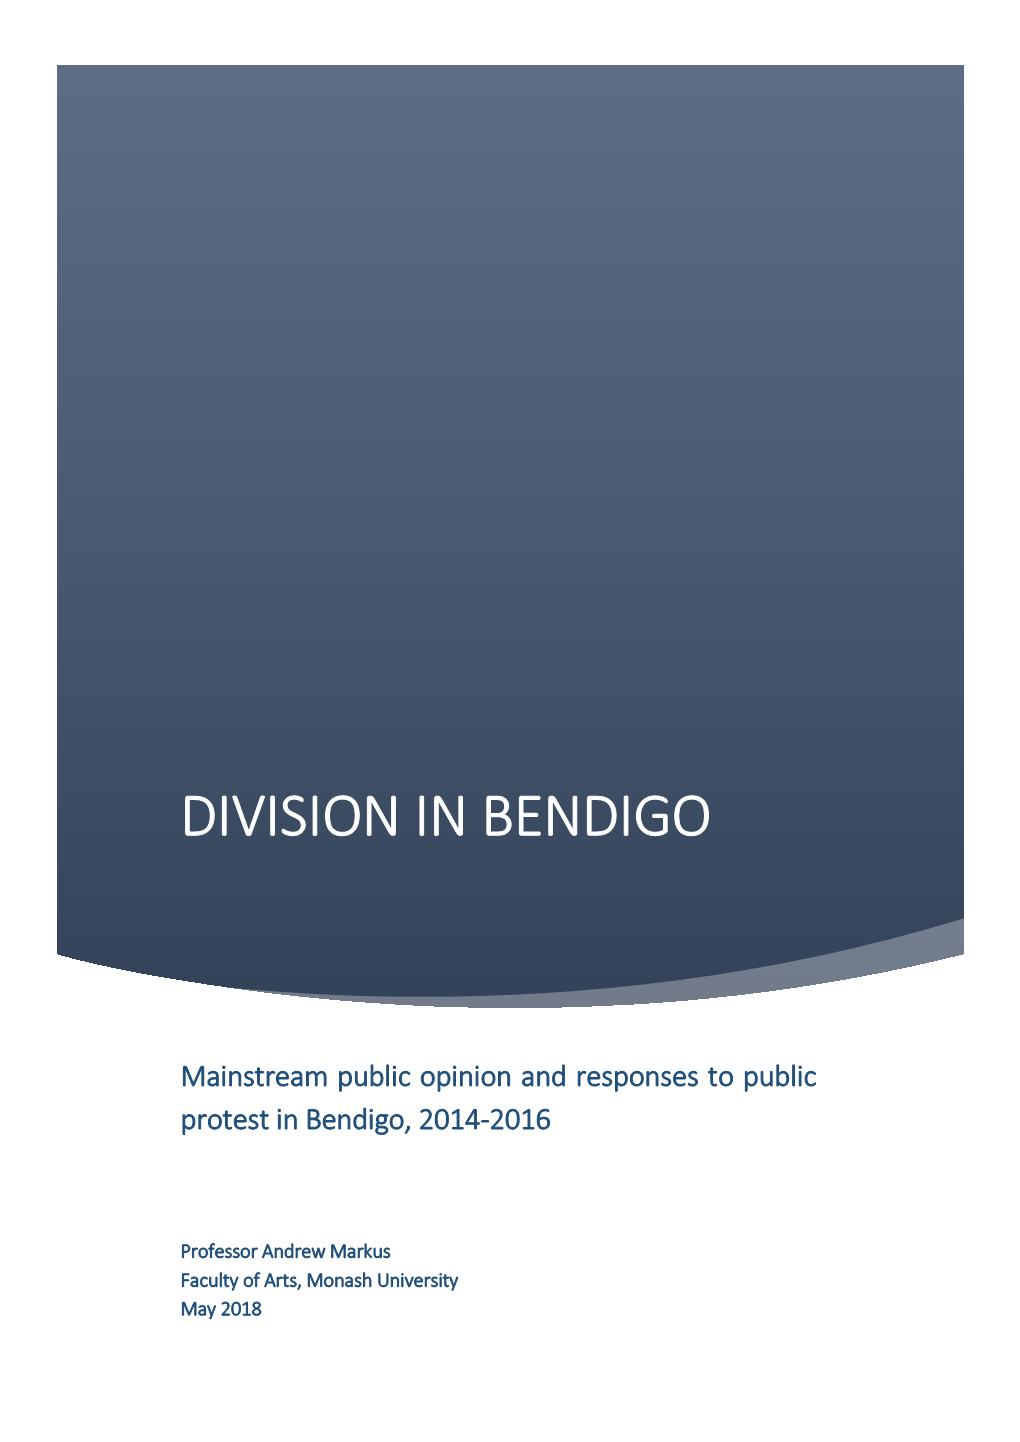 Division in Bendigo